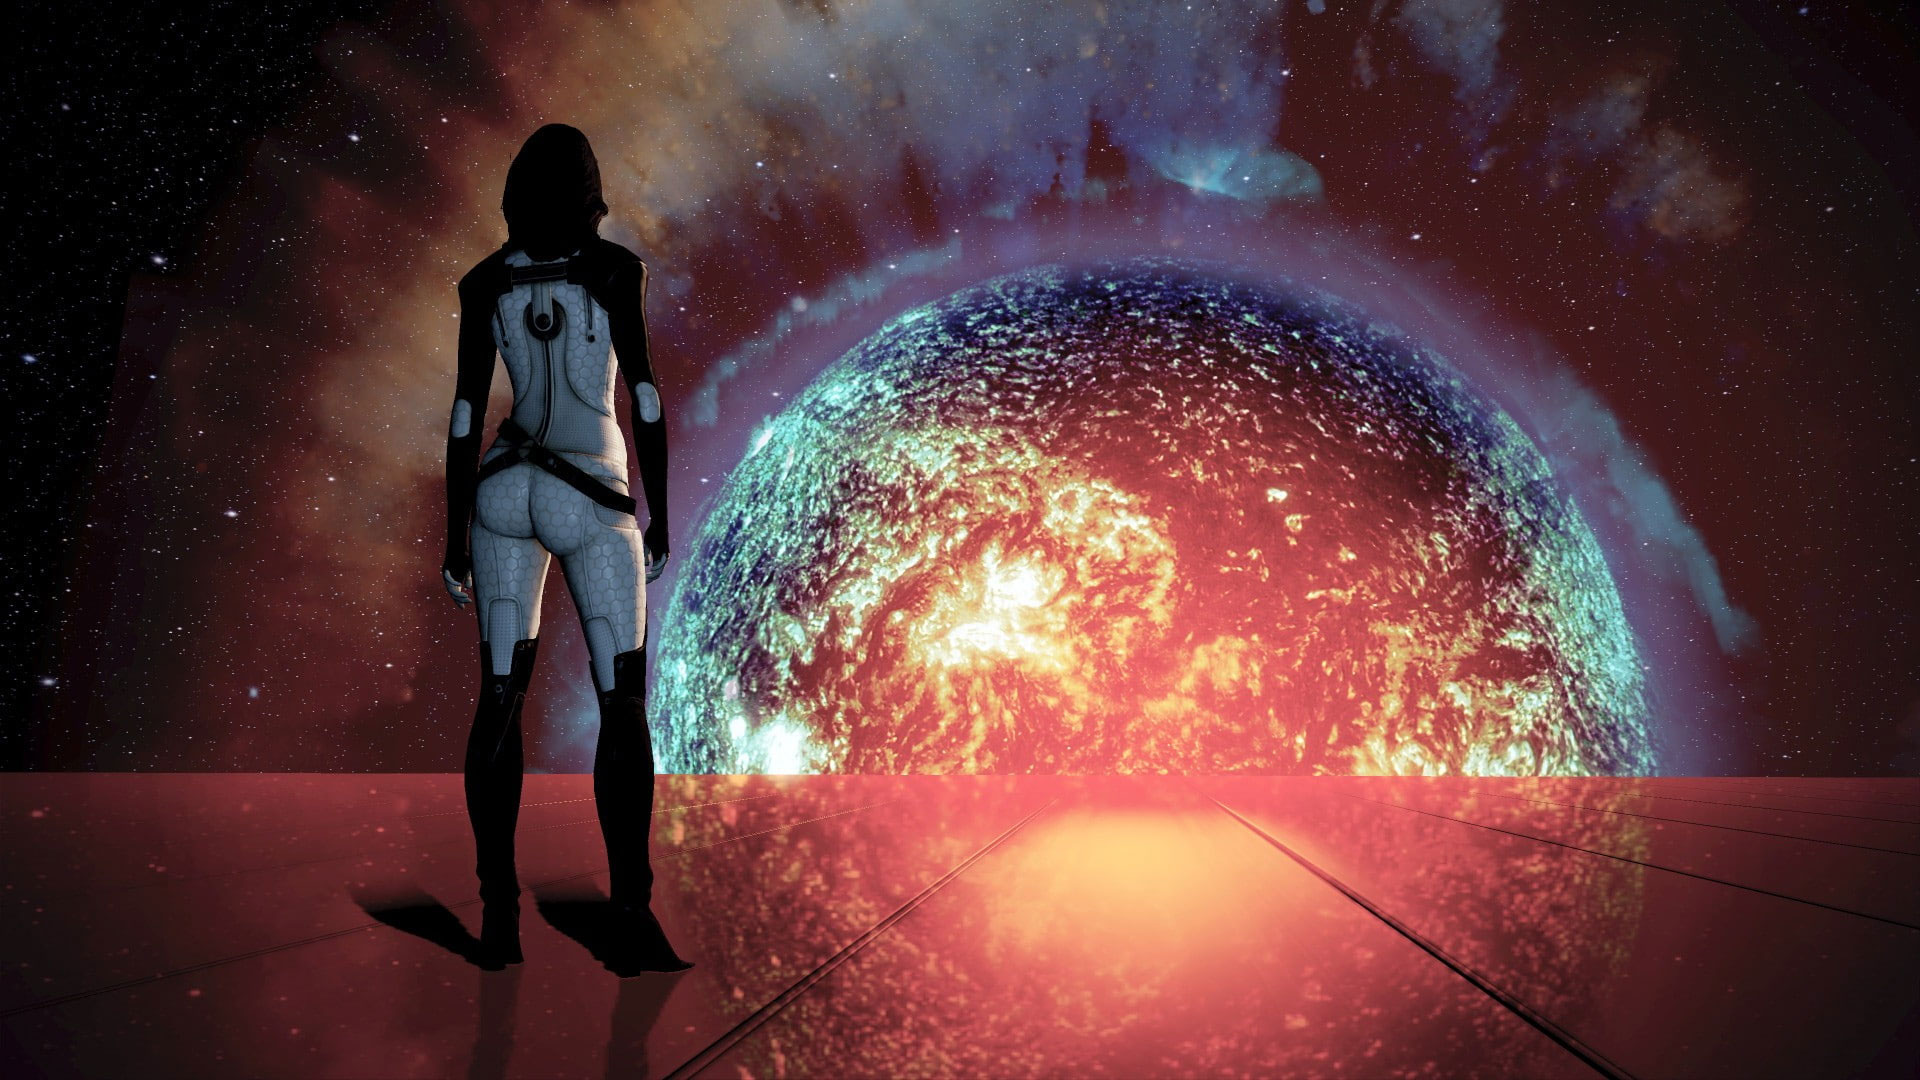 Wallpaper Mass Effect, Mass Effect 2, Miranda